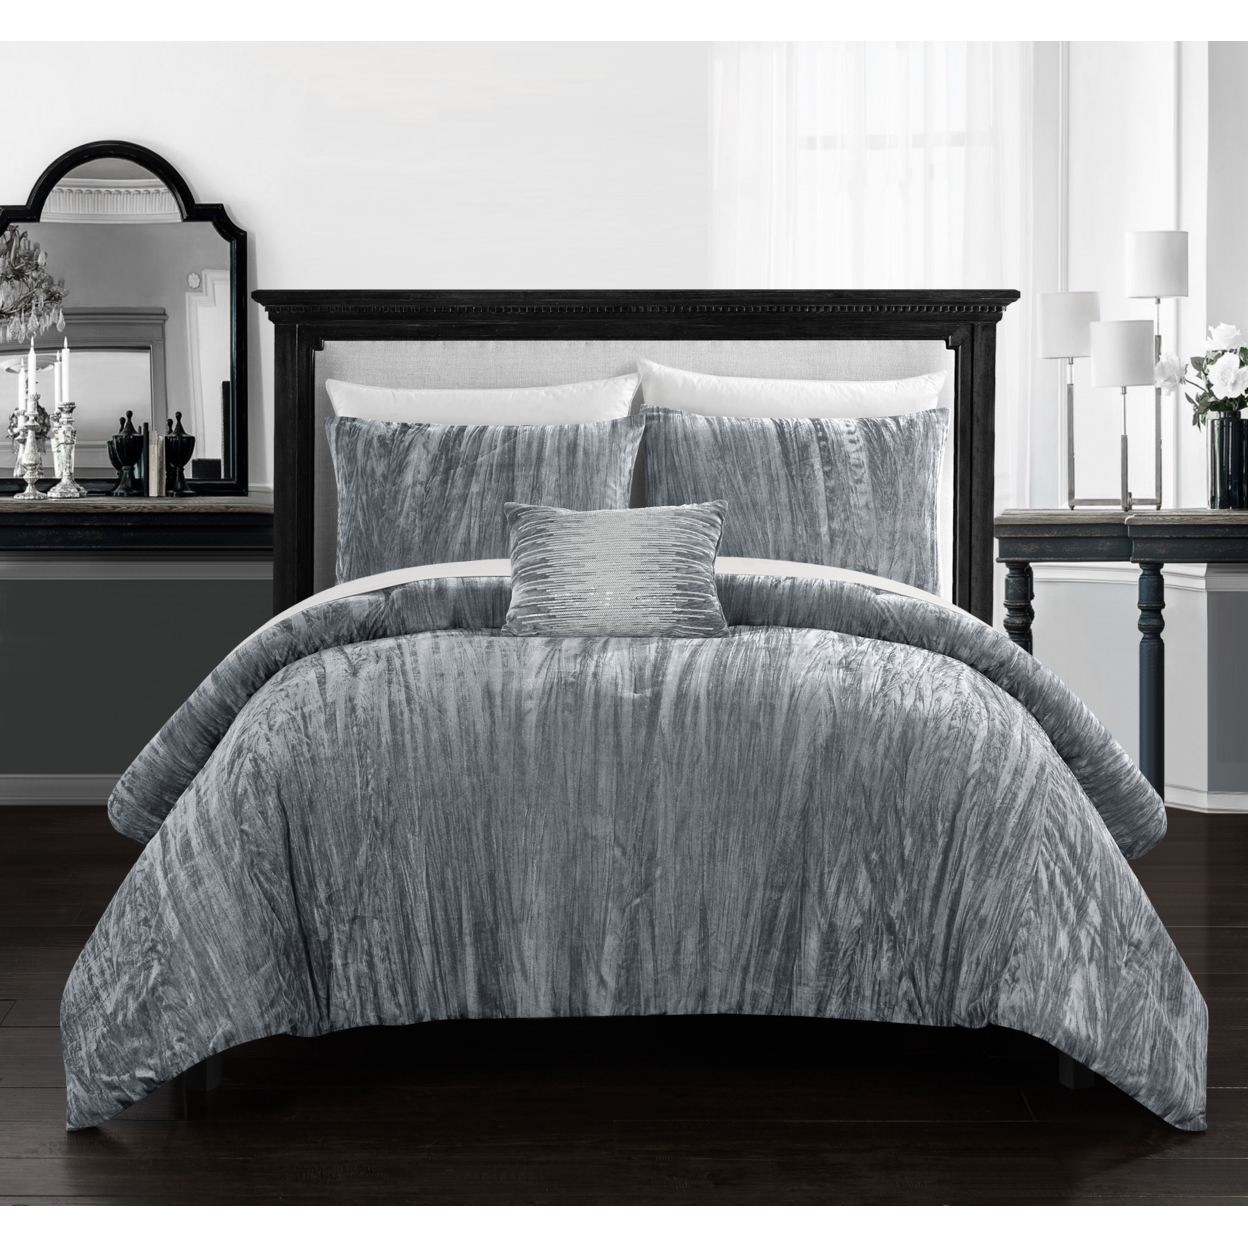 Merieta 4 Piece Comforter Set Crinkle Crushed Velvet Bedding - Decorative Pillow Shams Included - Grey, Queen